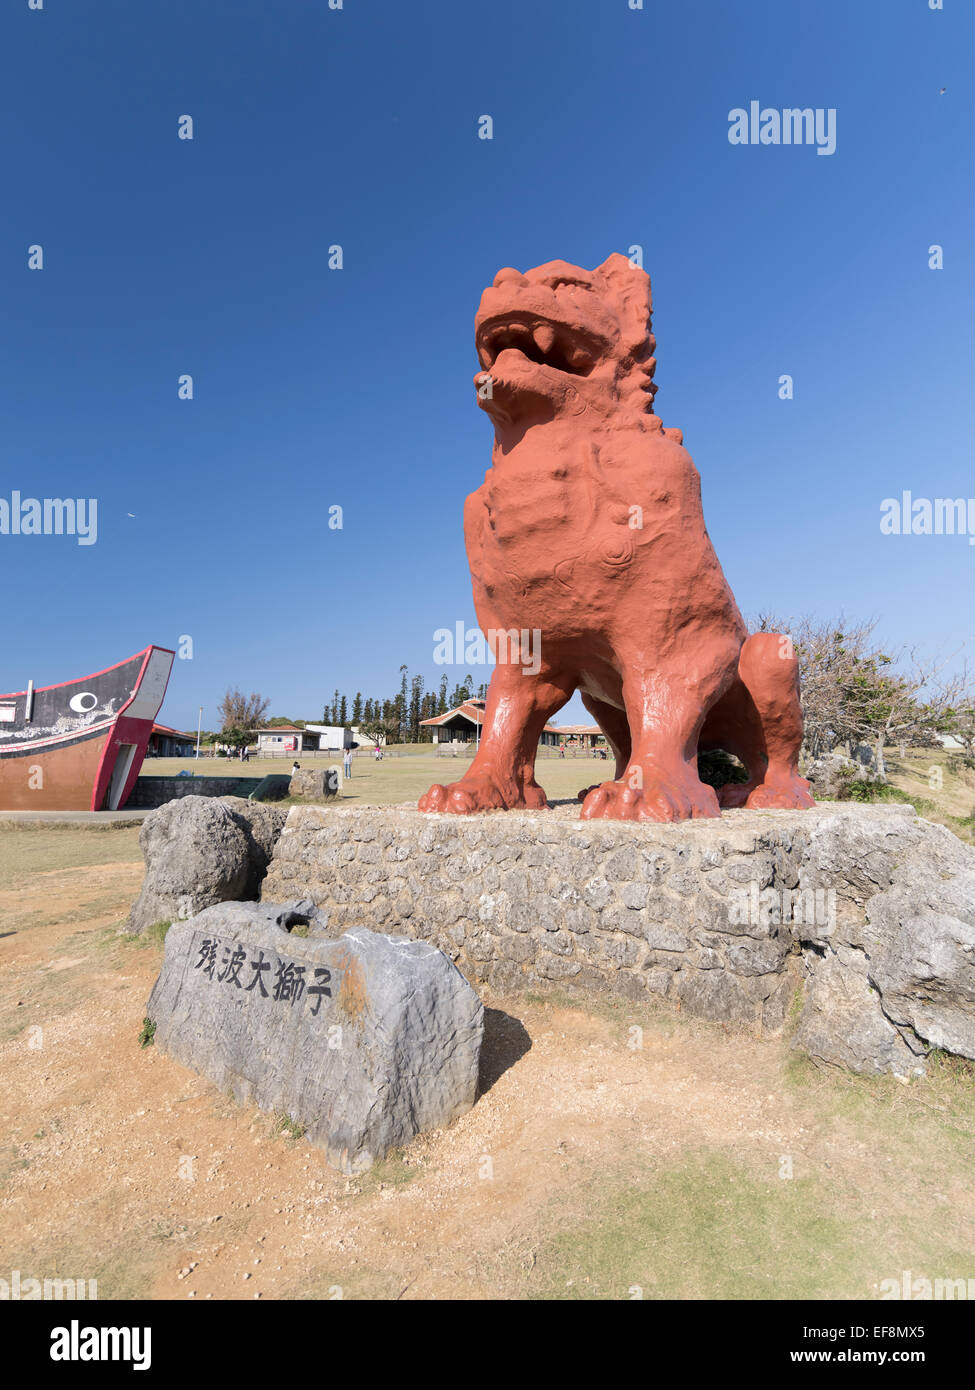 Largest shisa statue in Okinawa, Yomitan Village, Okinawa, Japan Stock Photo